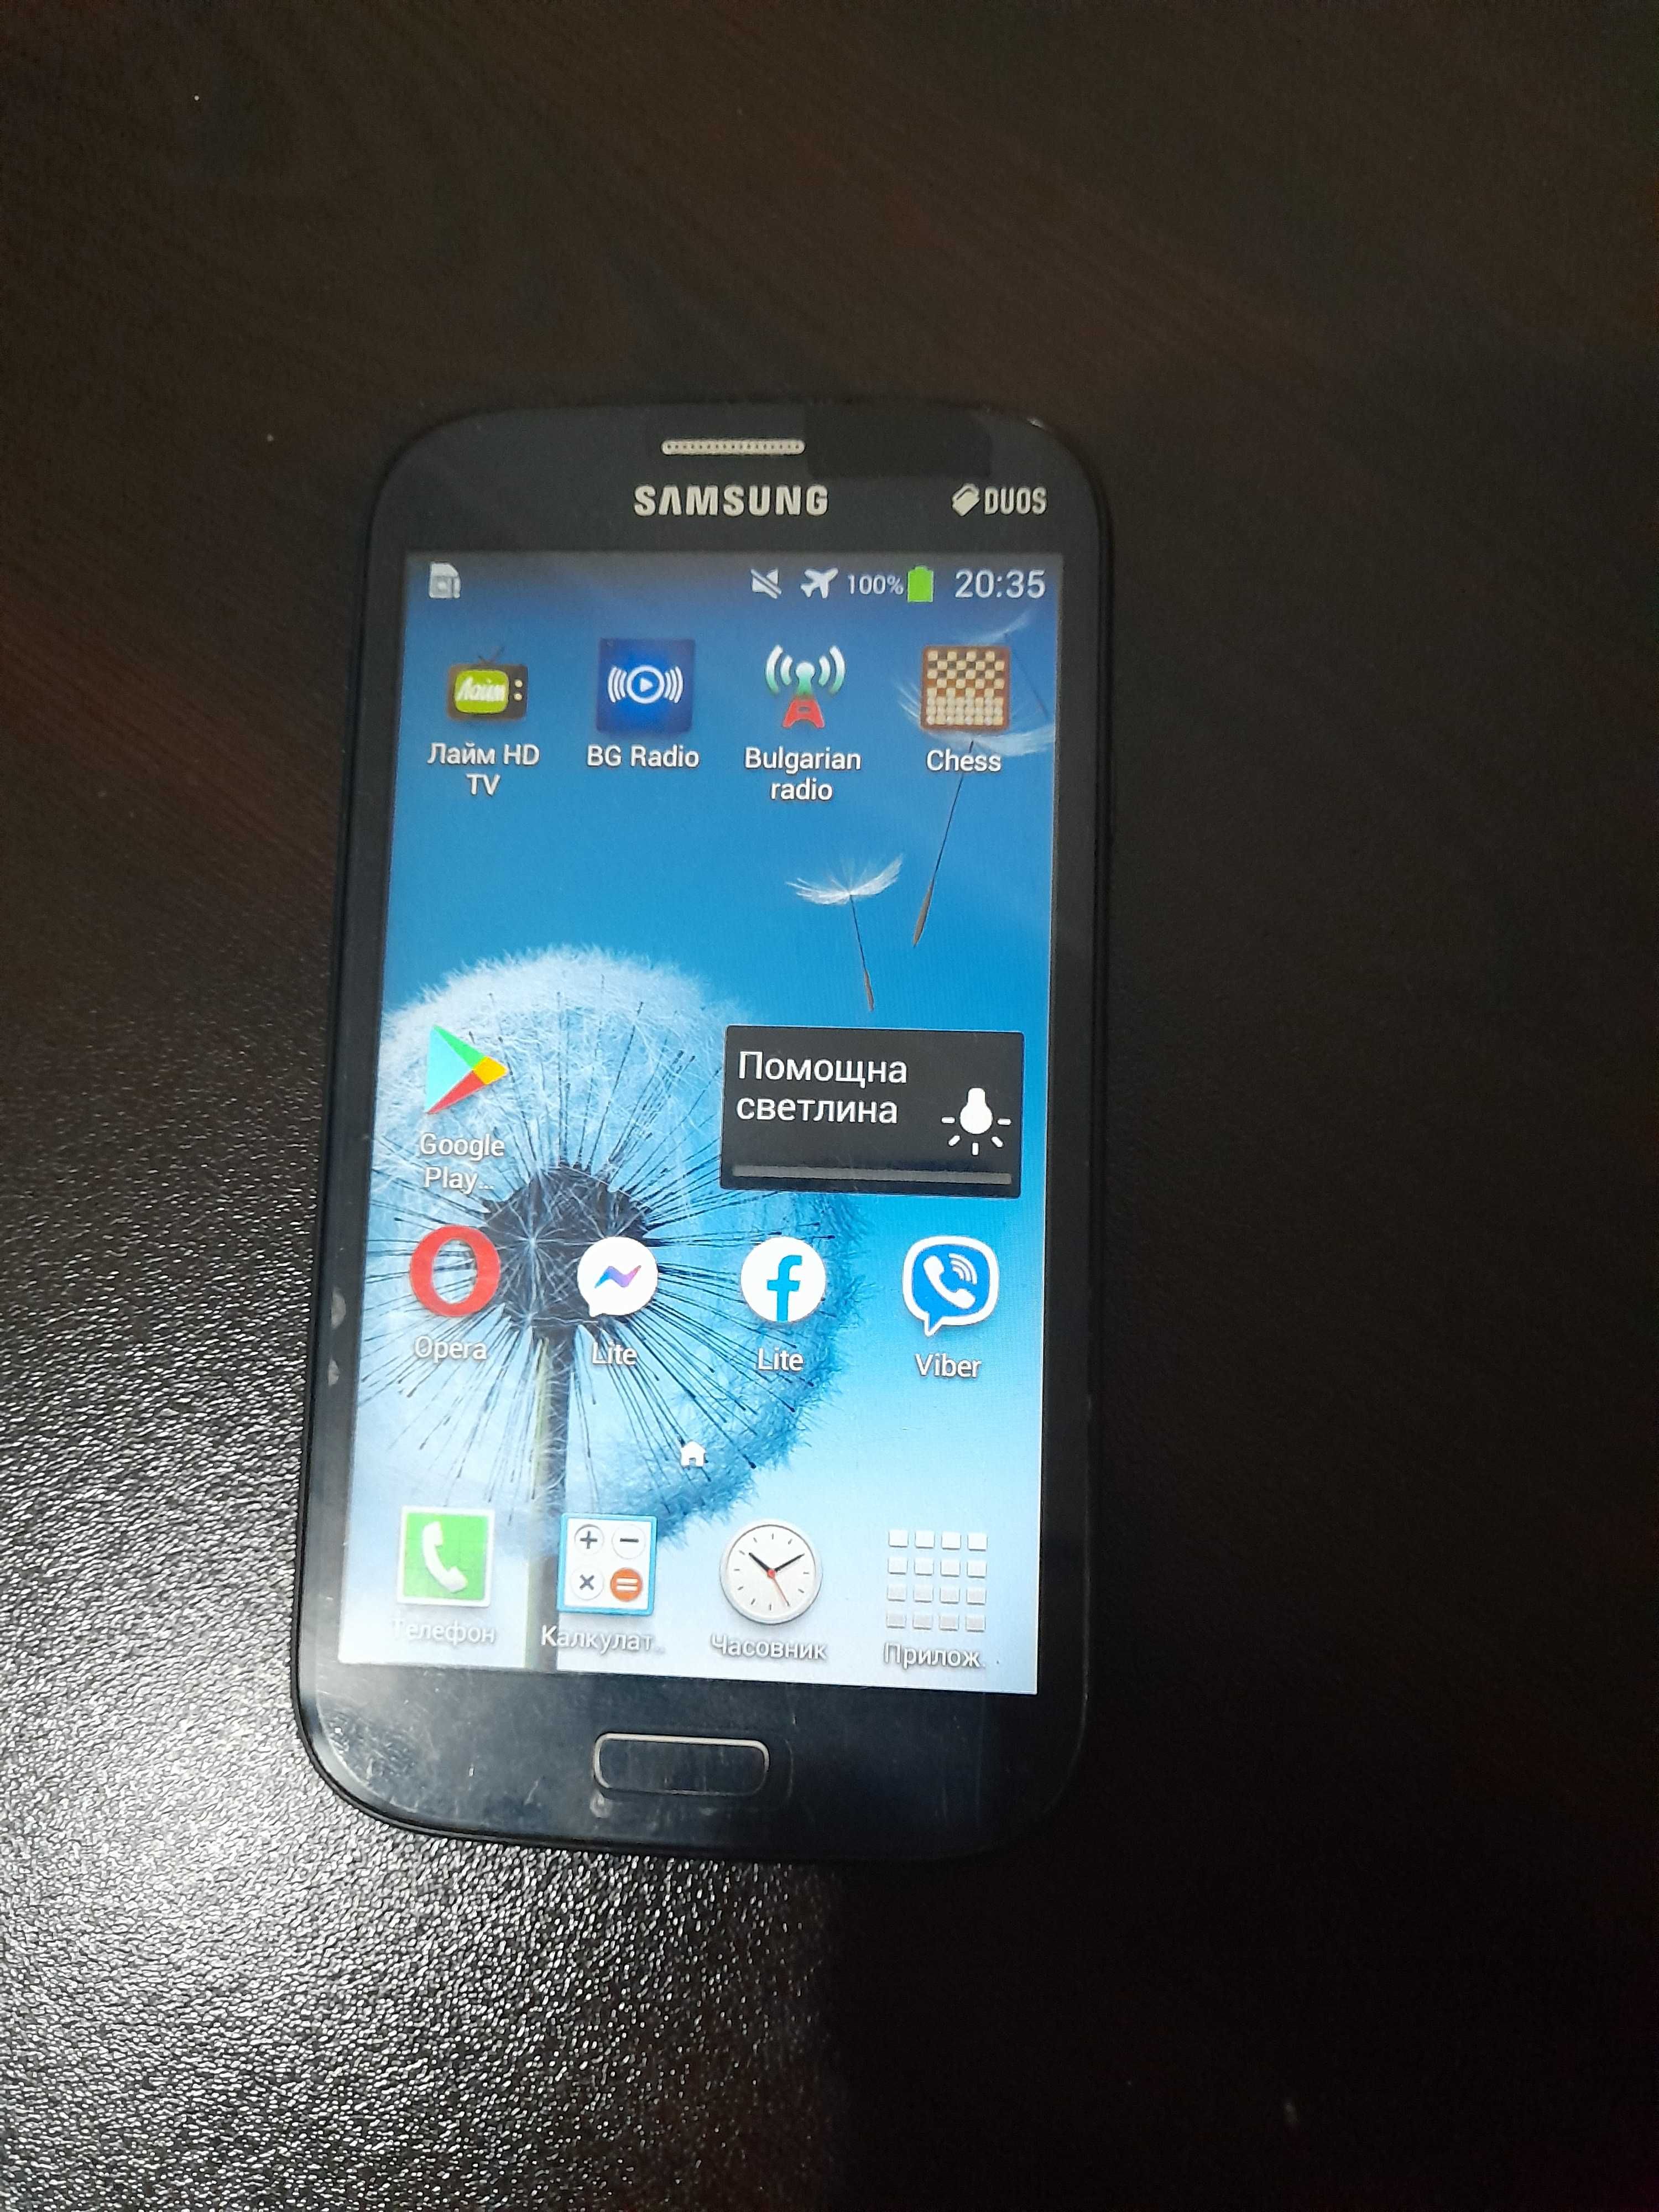 Samsung grand duos I9082